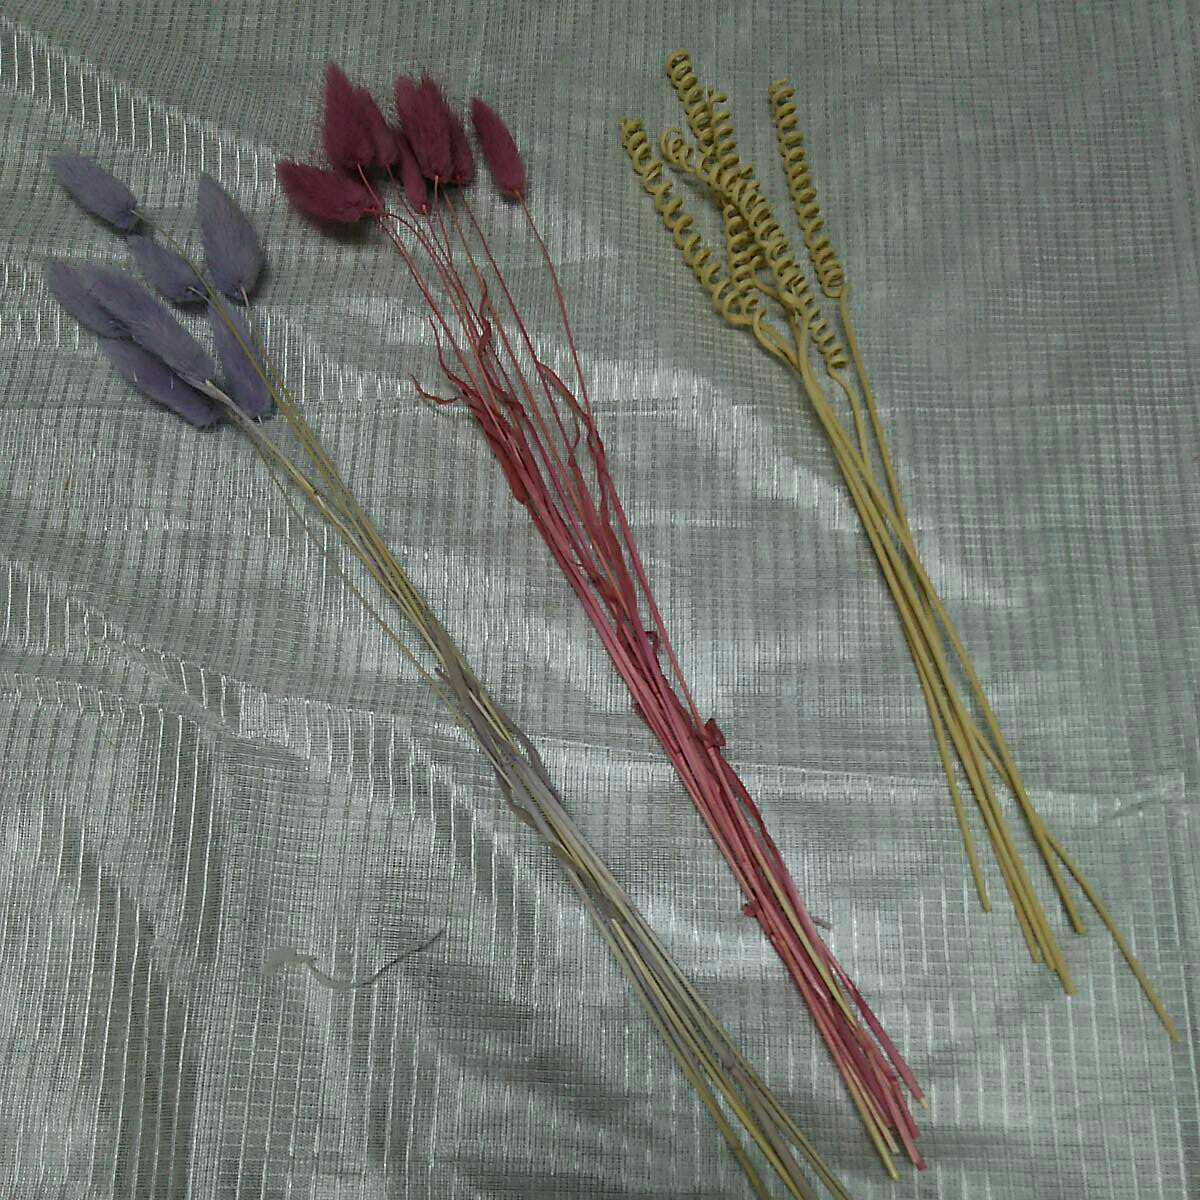 S2012905 Blizzard flower arrangement material for flower arrangement kit 